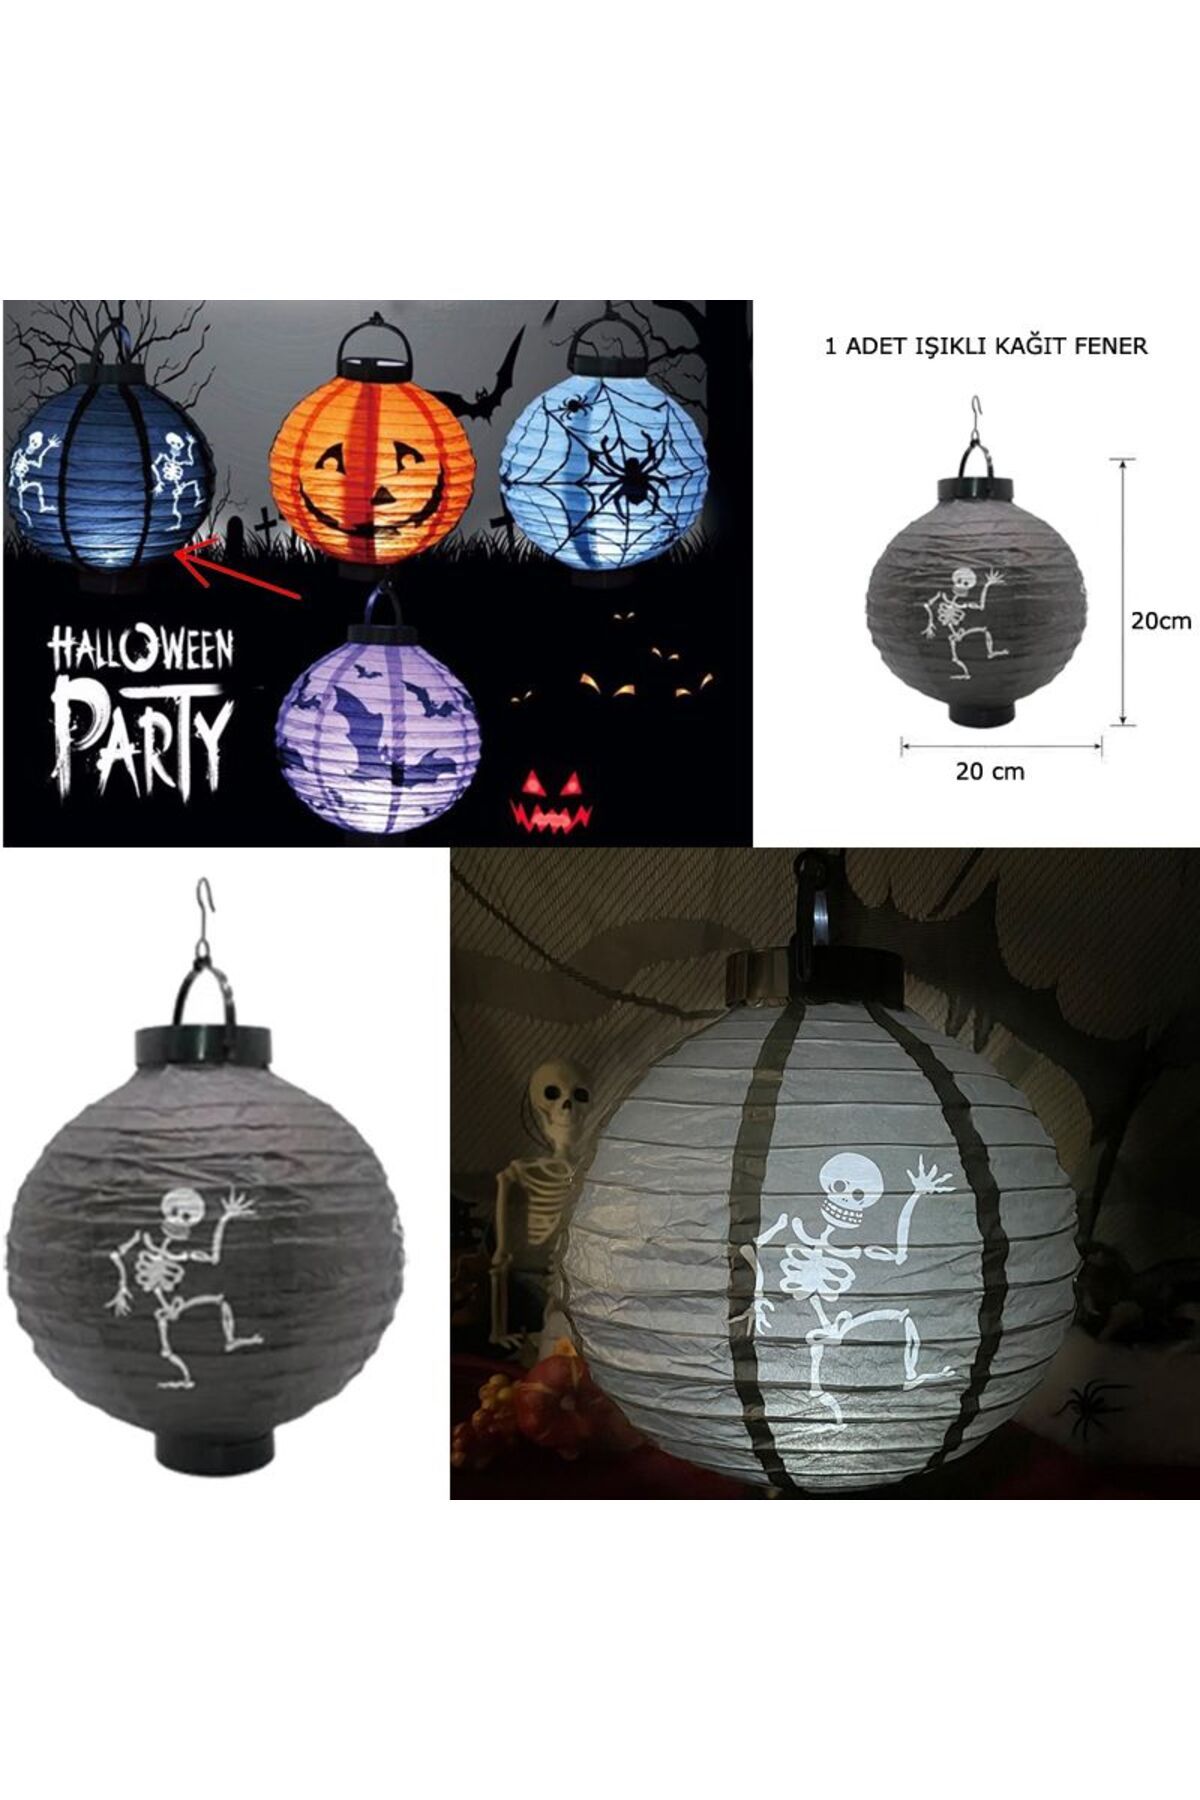 partidolu Halloween 20 Cm Led Işıklı Iskelet Desenli Siyah Renk Kağıt Japon Feneri 1adet